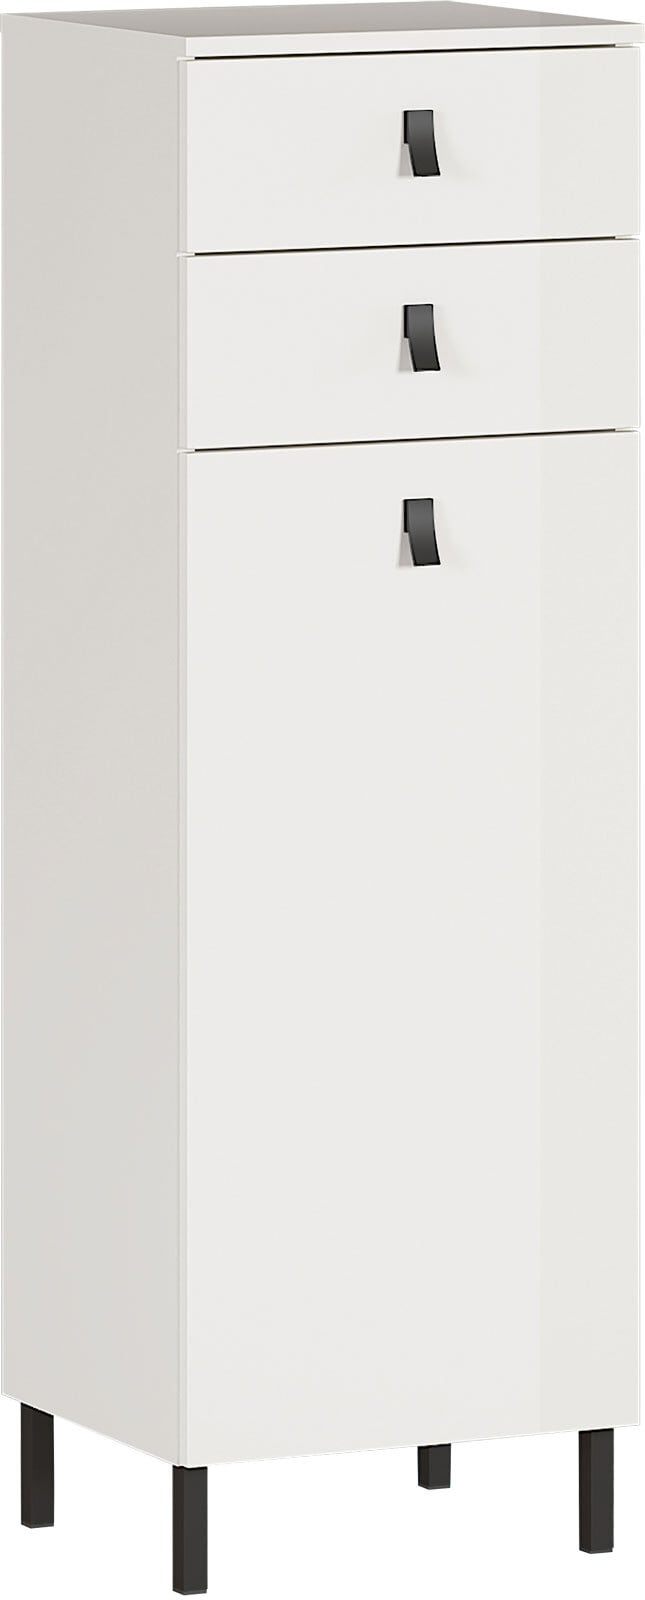 Mittelschrank JONA 39 x 119 cm Weiß